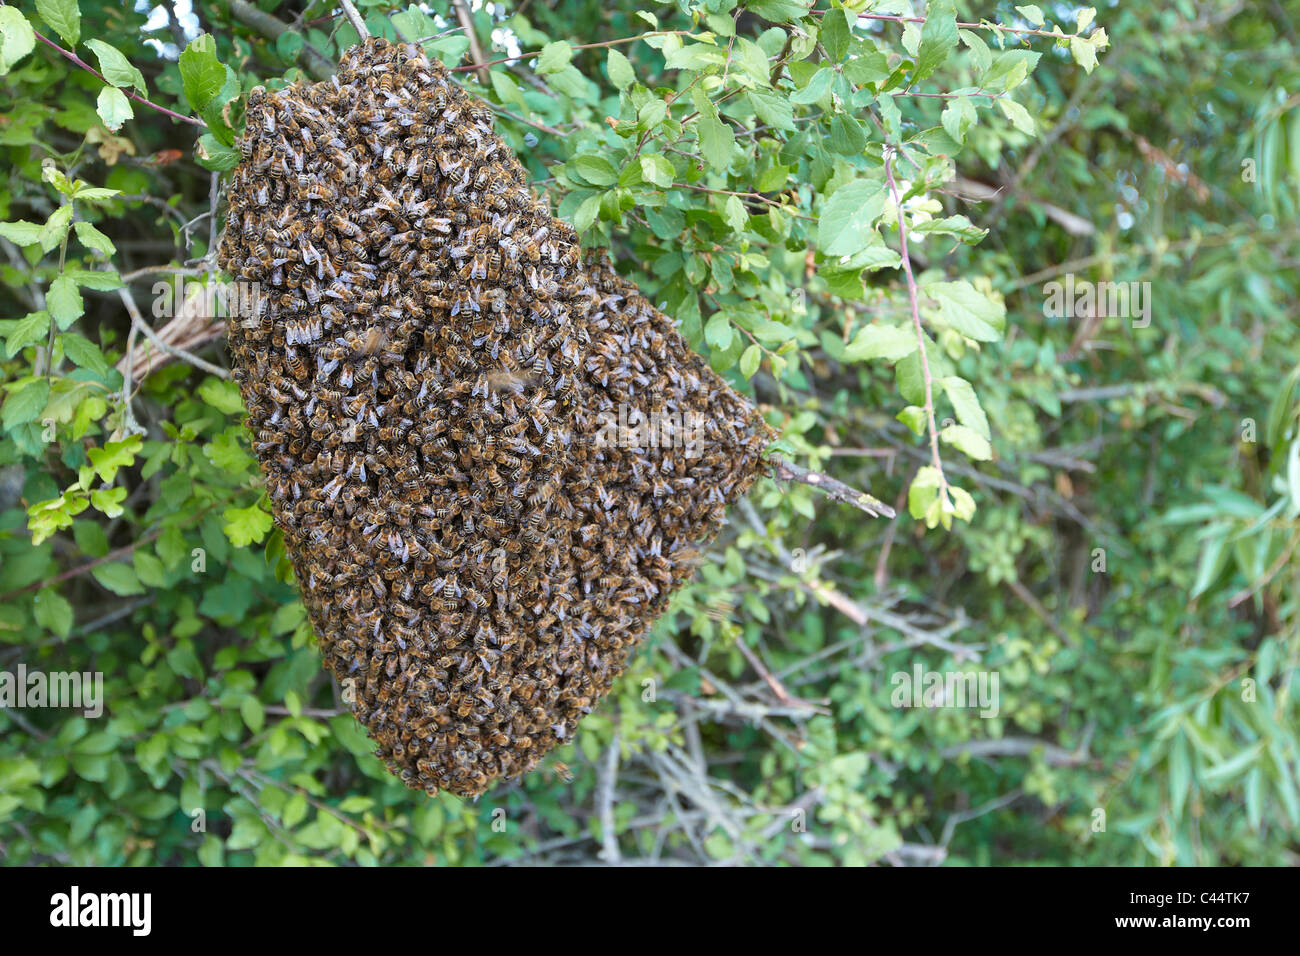 L'essaimage des abeilles dans une haie, East Yorkshire, UK. Essaim d'abeilles Banque D'Images